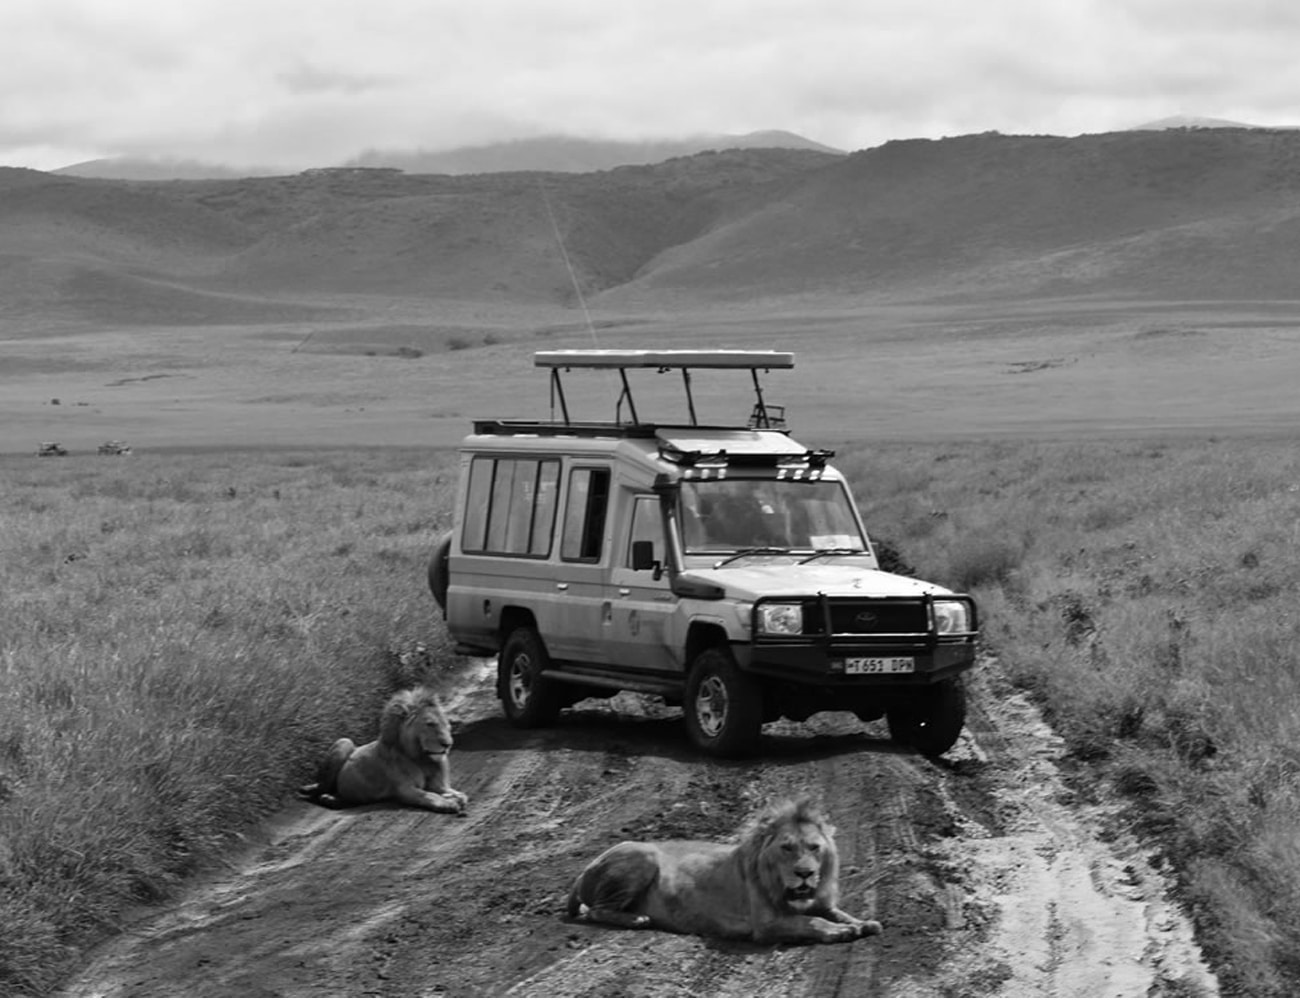 Wildlife at Ngorongoro Conservation Area